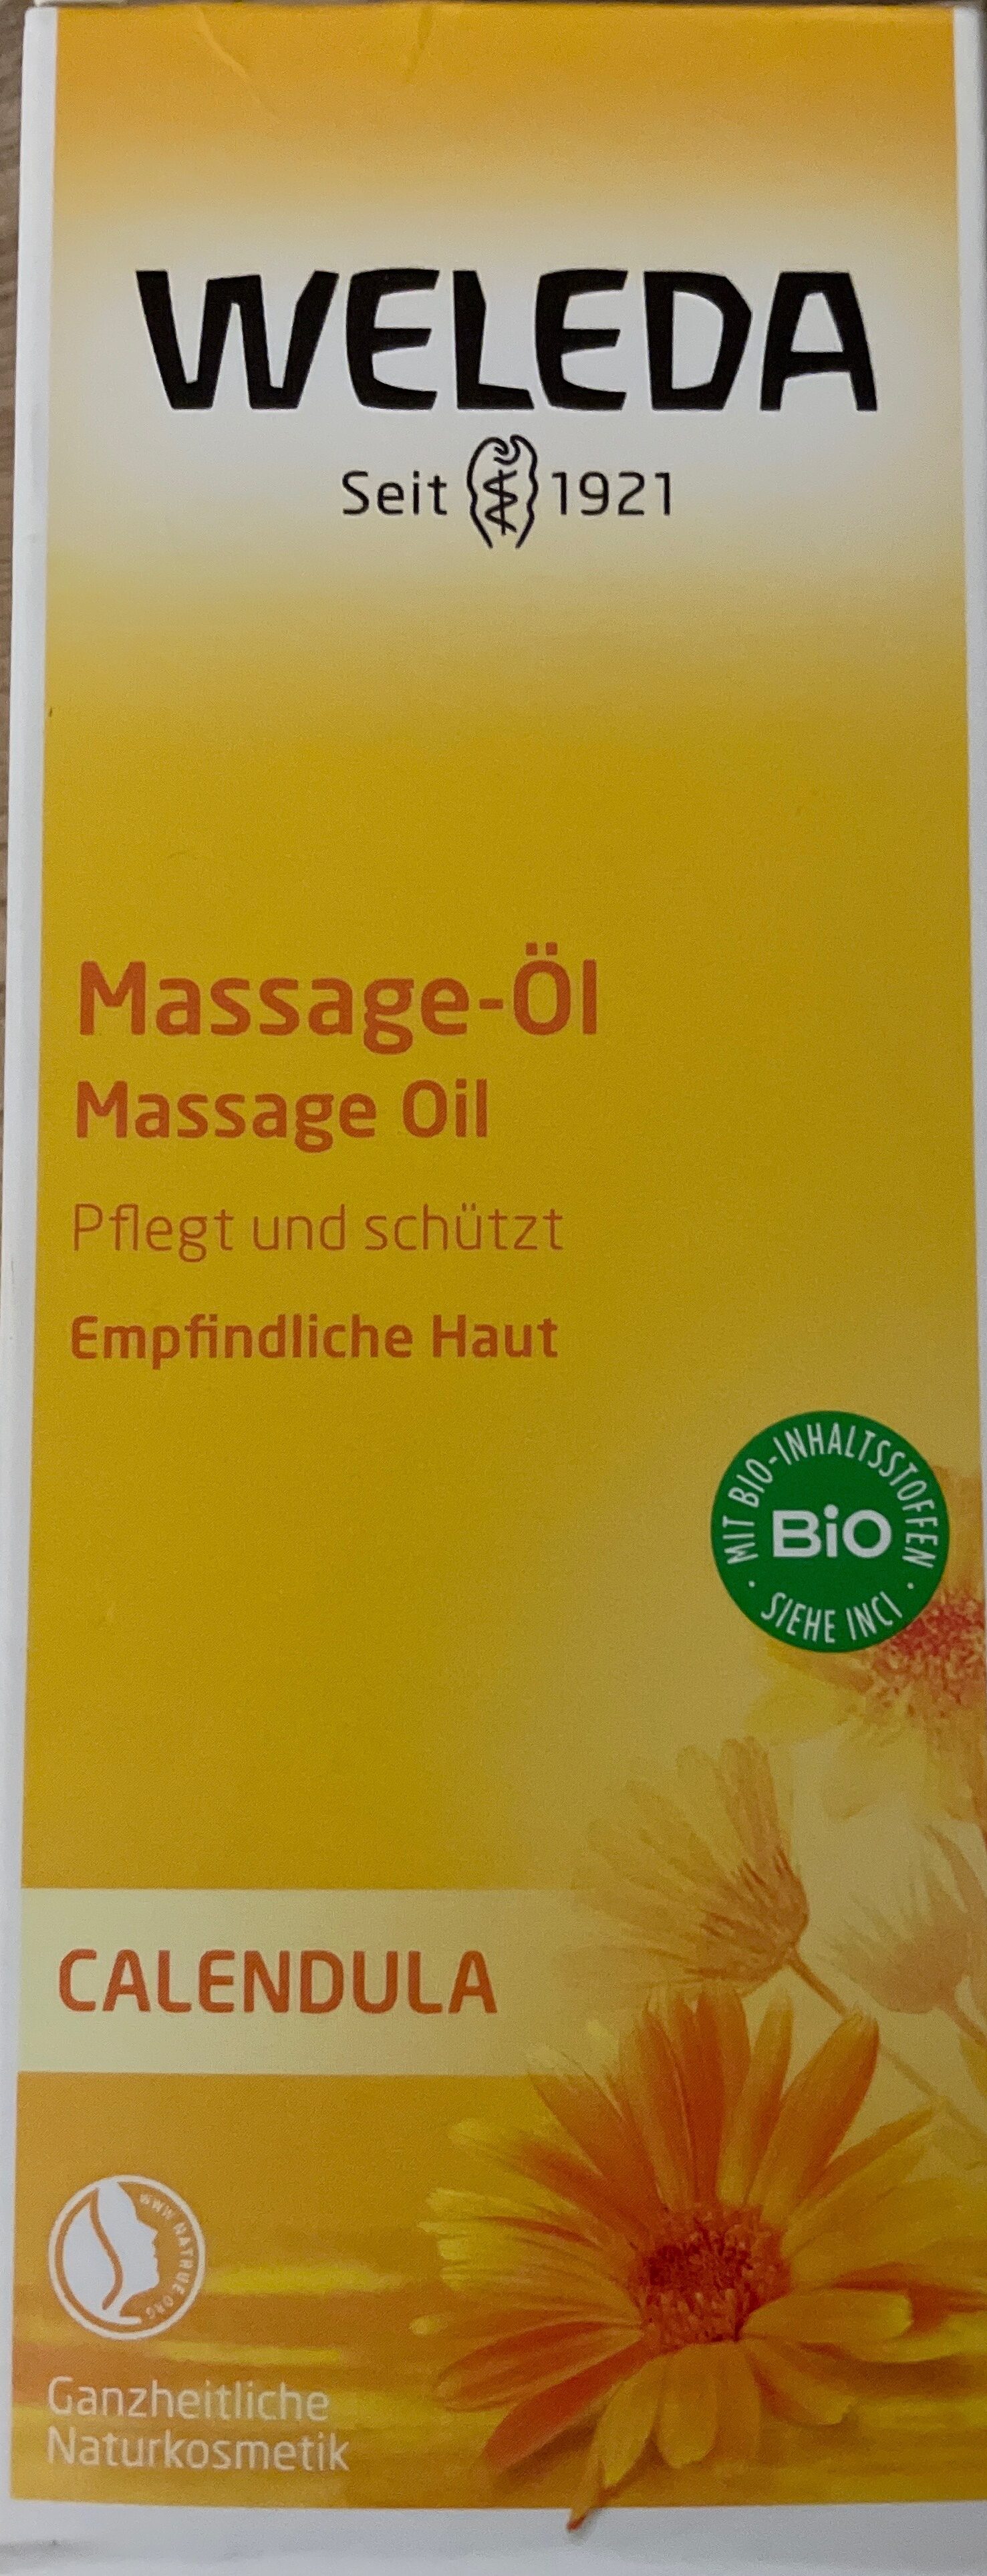 Massage-öl - Product - de